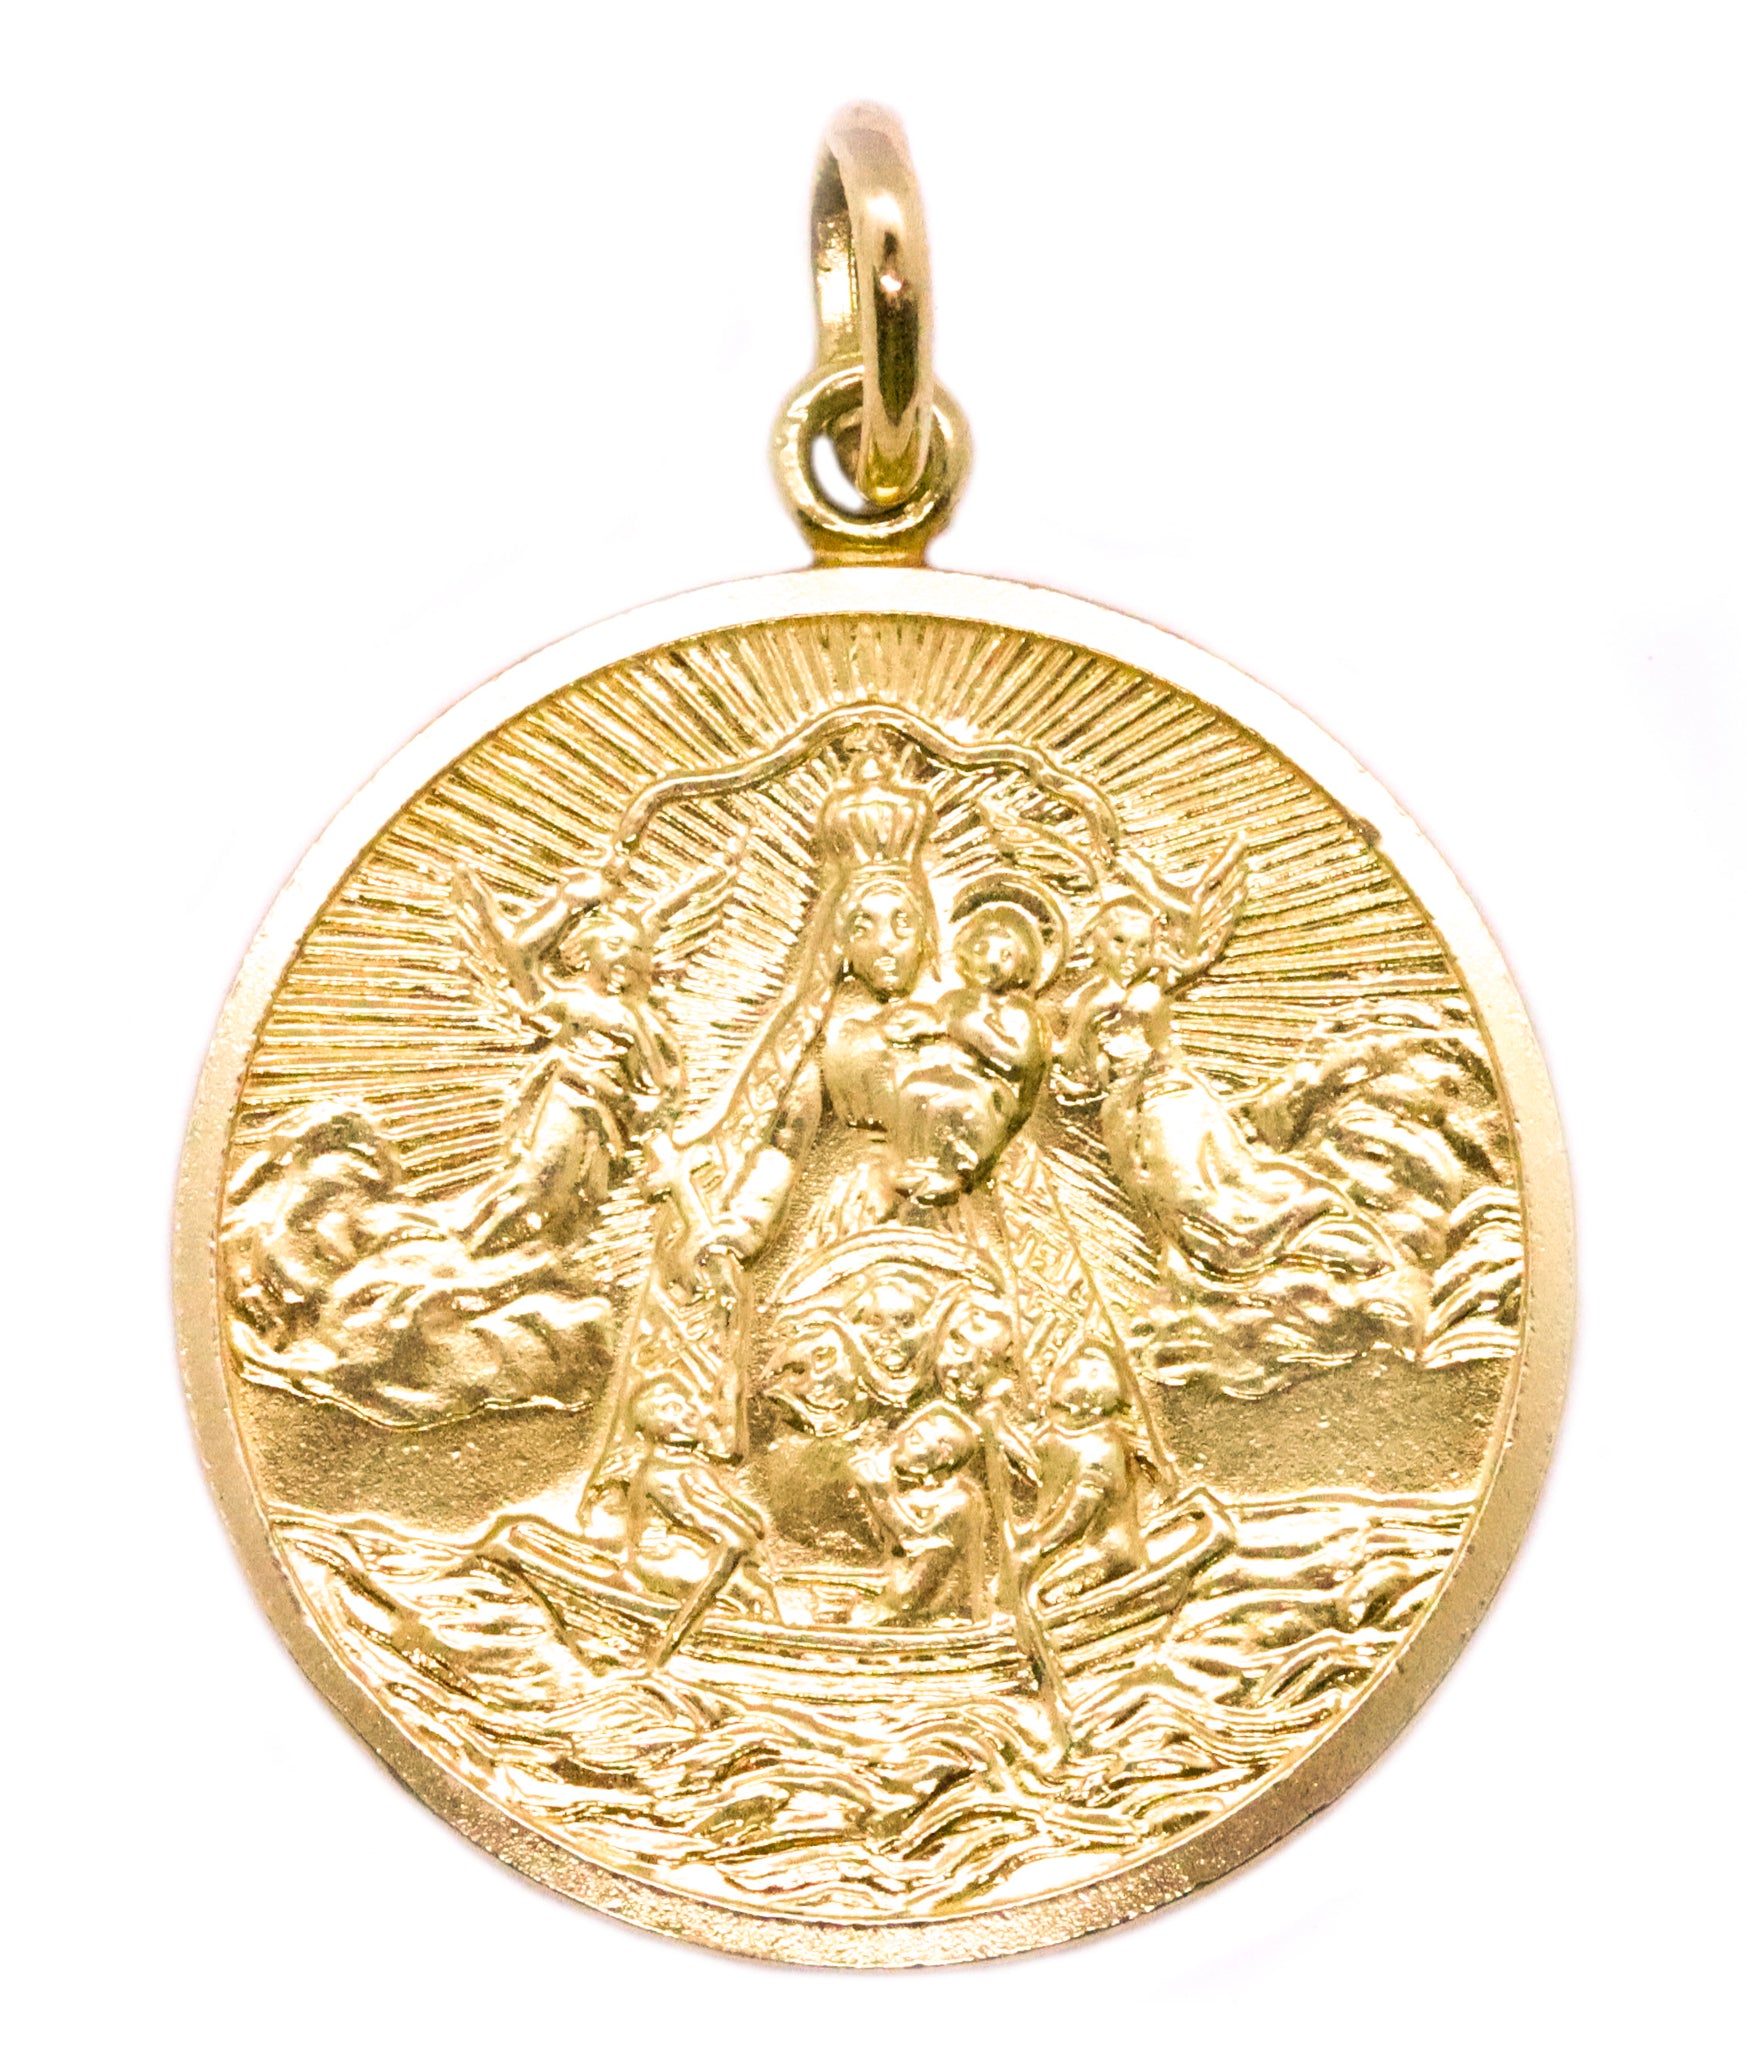 Italian 18kt Gold Over Sterling Religious Charm Bracelet